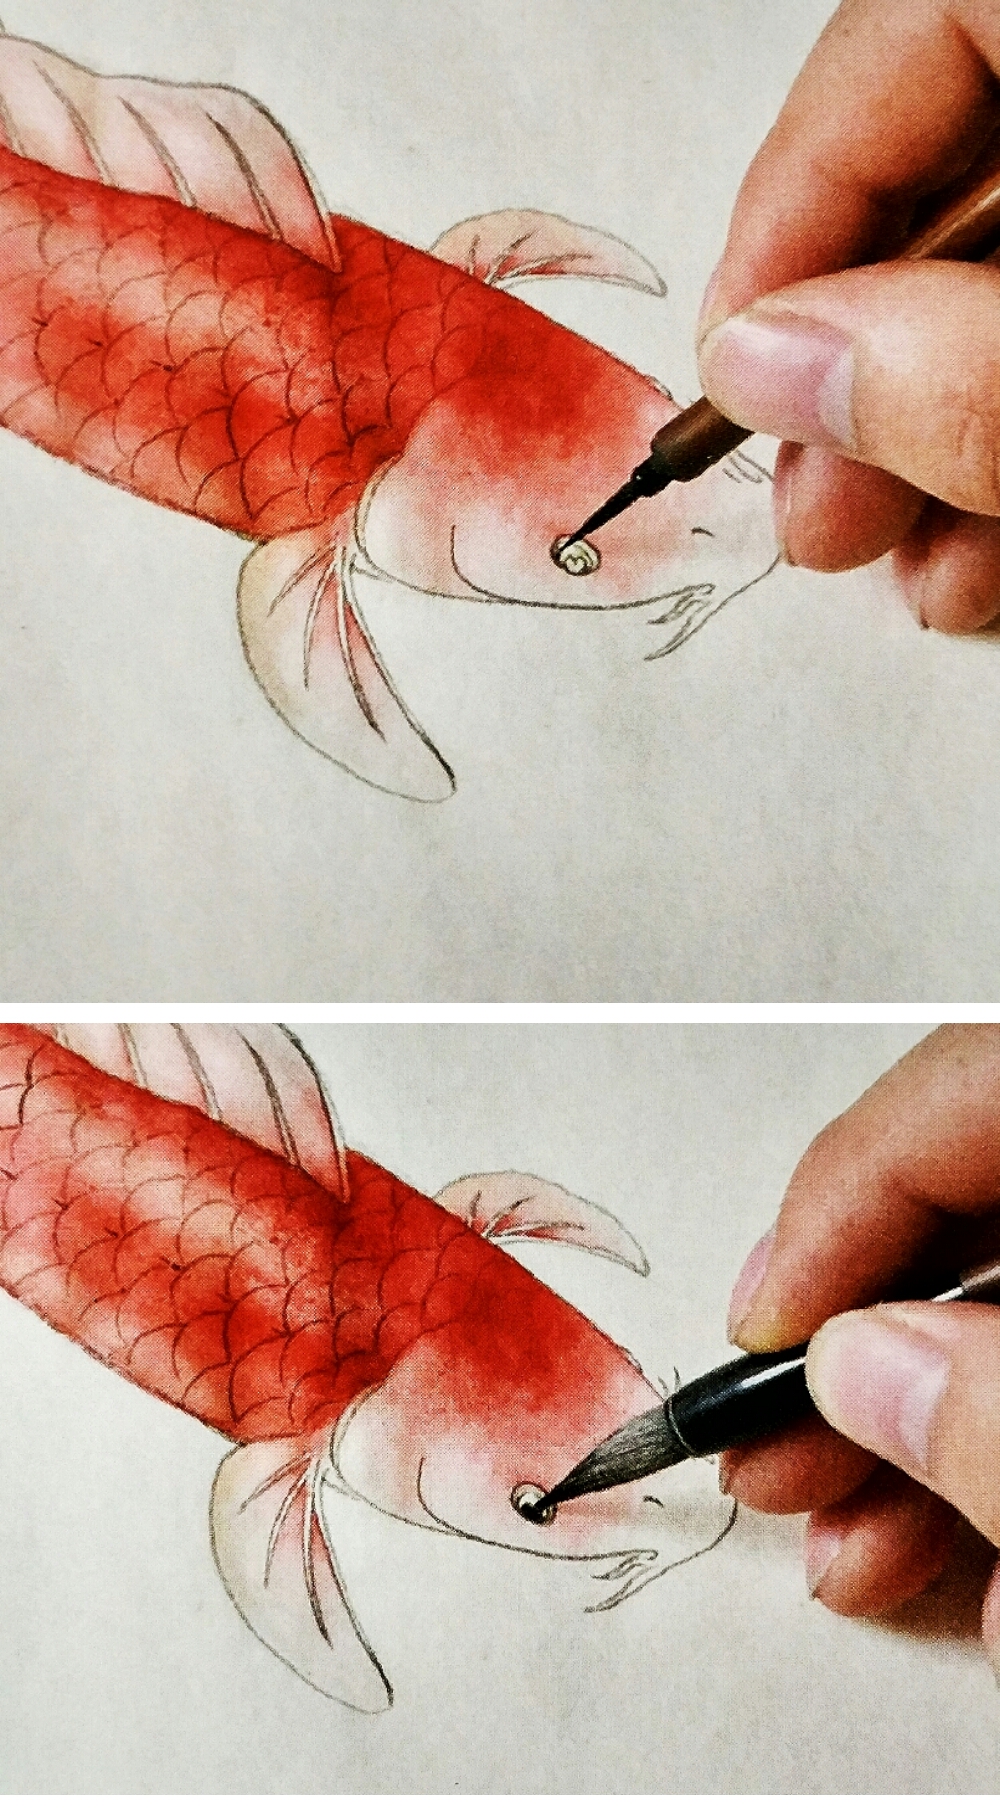 红鲤鱼的画法与技巧图片